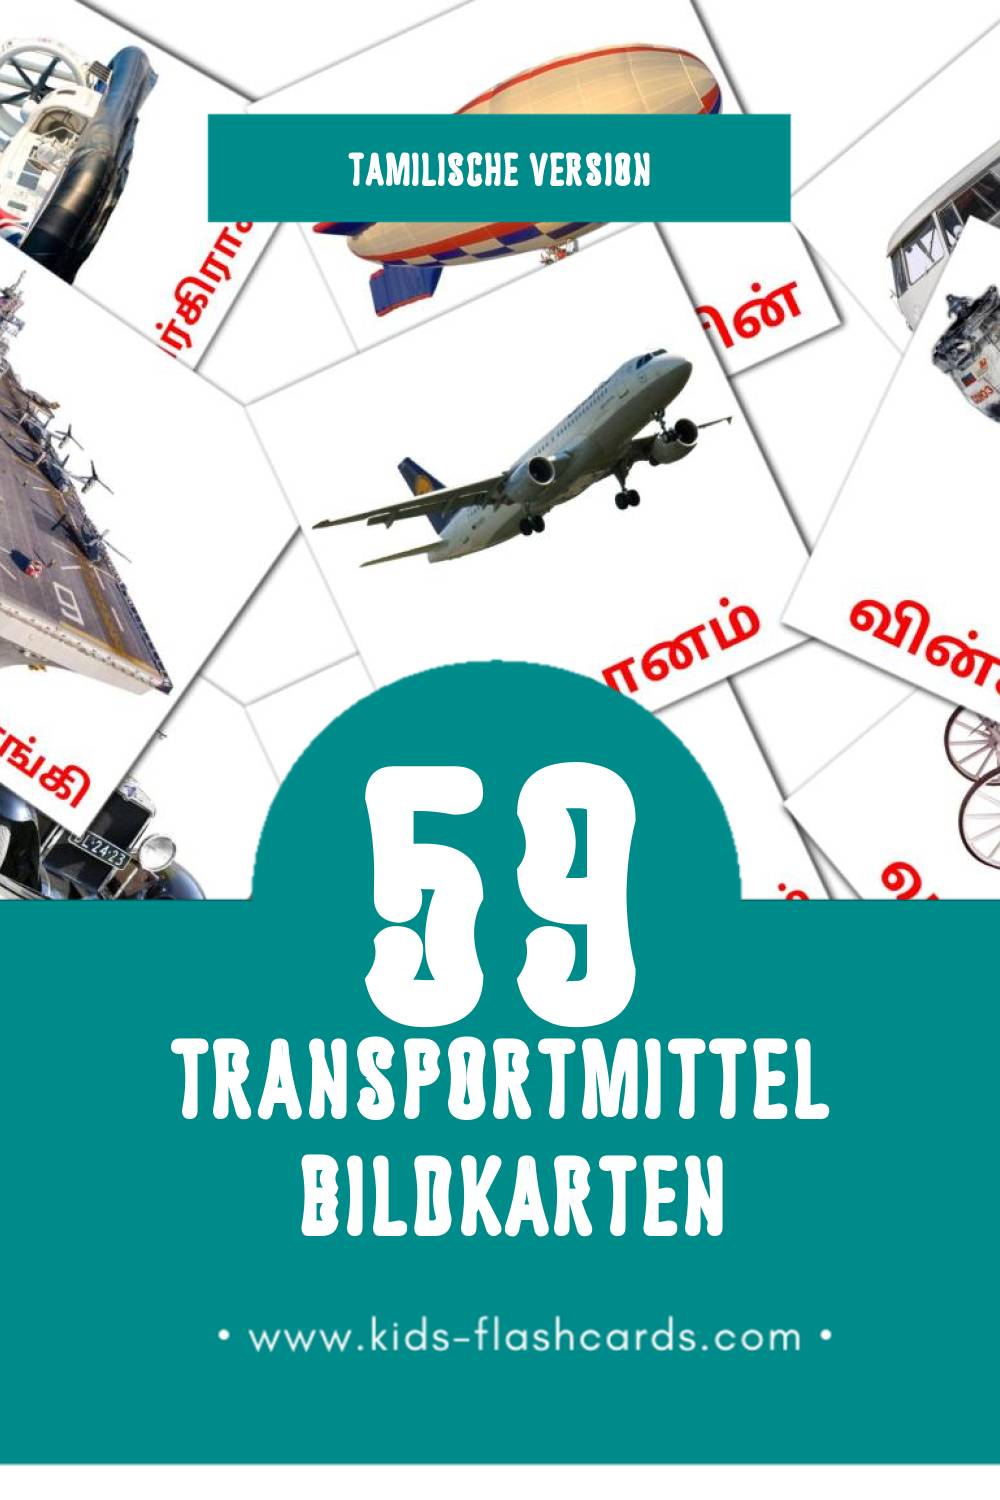 Visual போக்குவரத்து Flashcards für Kleinkinder (46 Karten in Tamilisch)